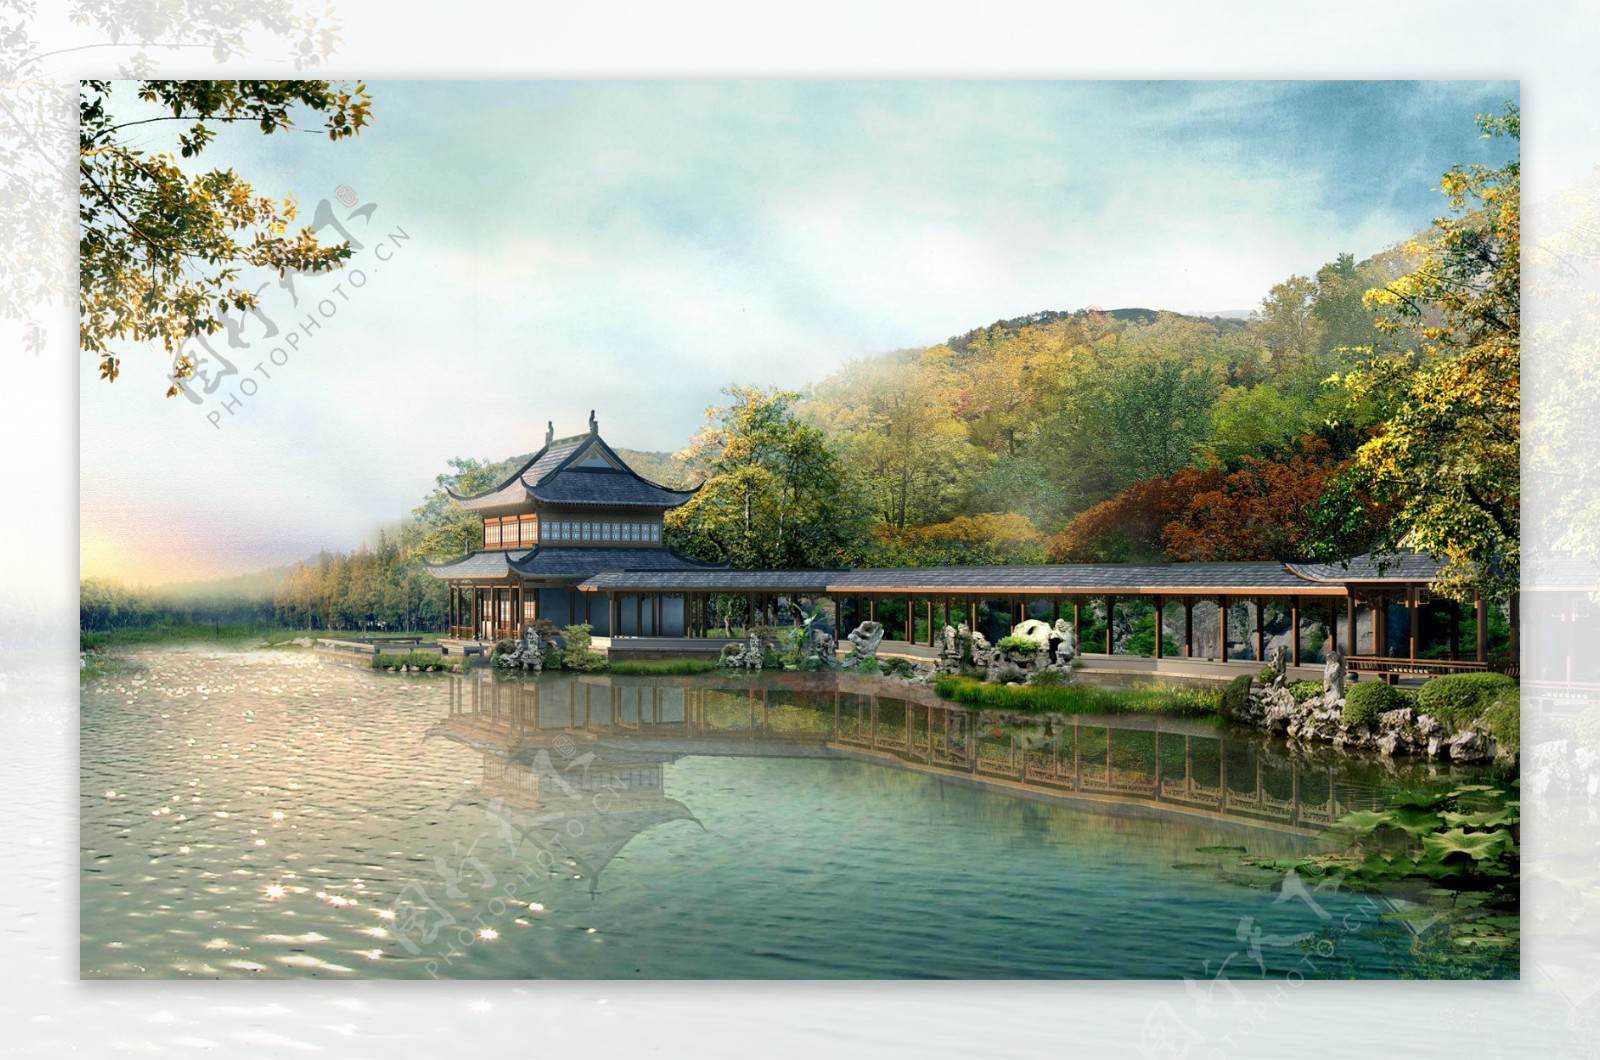 中国古典园林景观图片